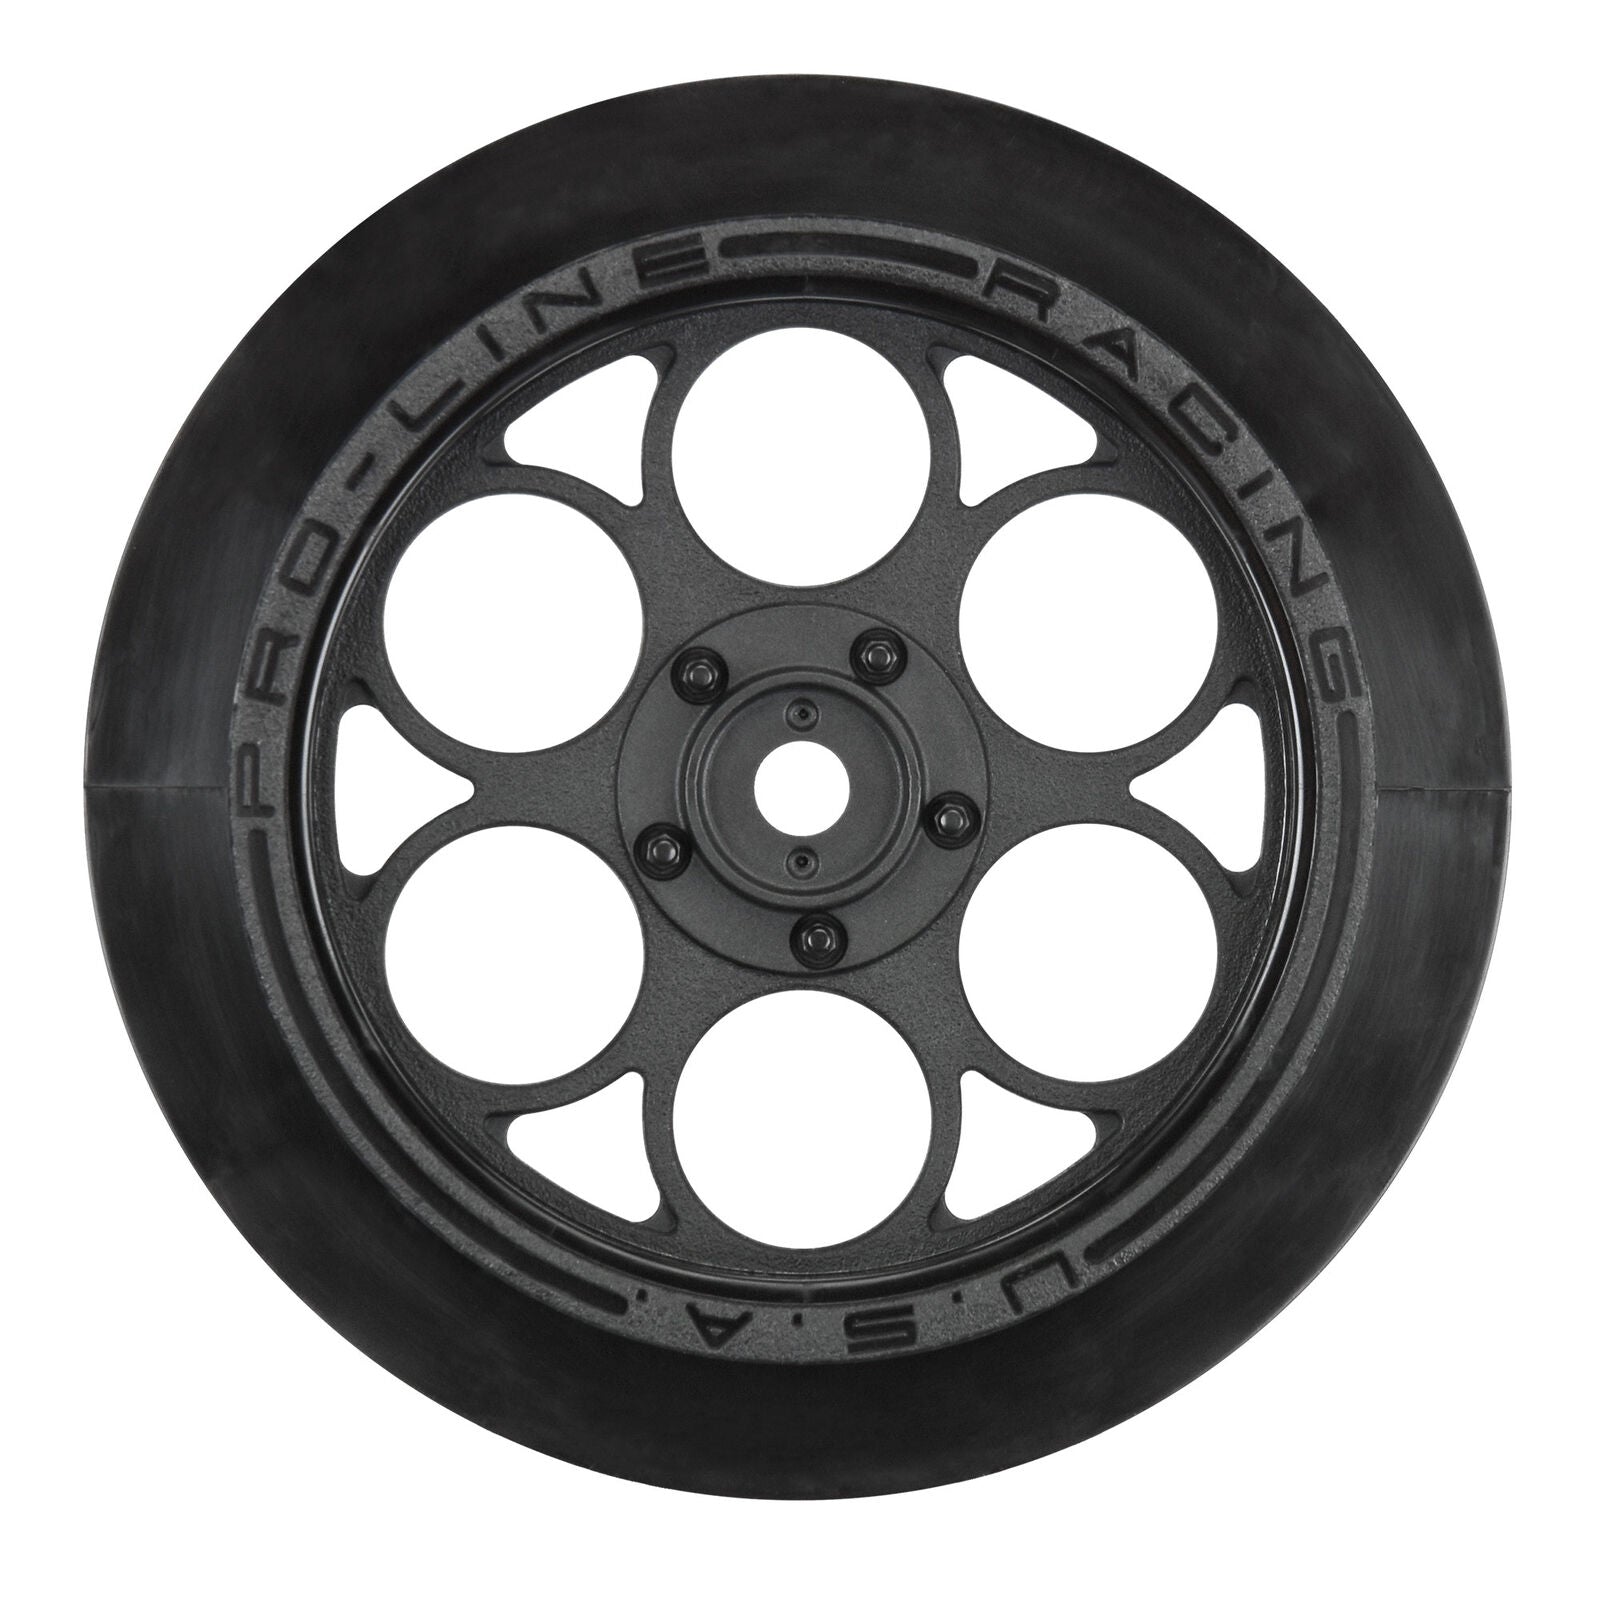 Ruedas delanteras Pro-Line Showtime Drag Racing con hexágono de 12 mm (negro) (2)